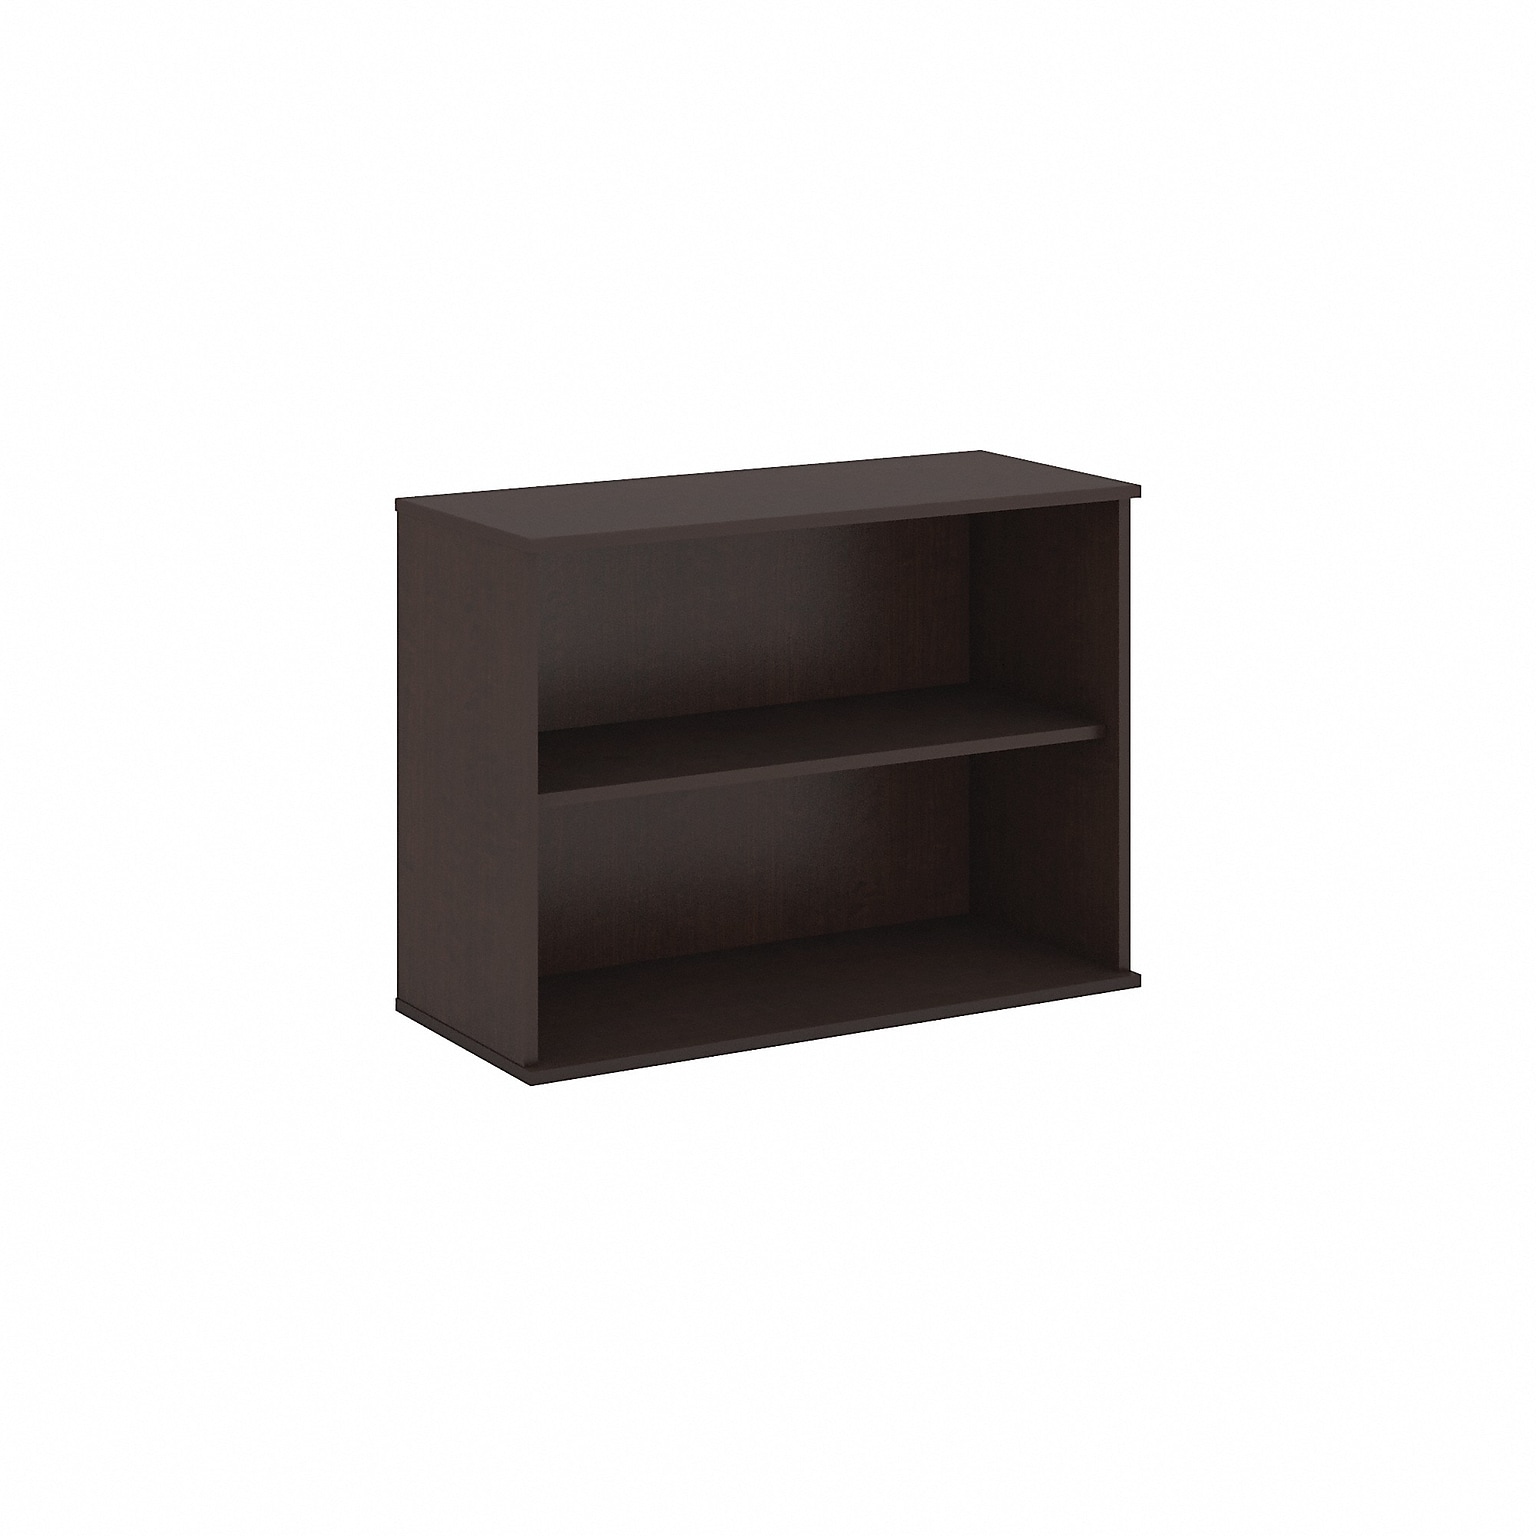 Bush Business Furniture 29.13H 2-Shelf Bookcase with Adjustable Shelf, Mocha Cherry Laminated Wood (BK3036MR)